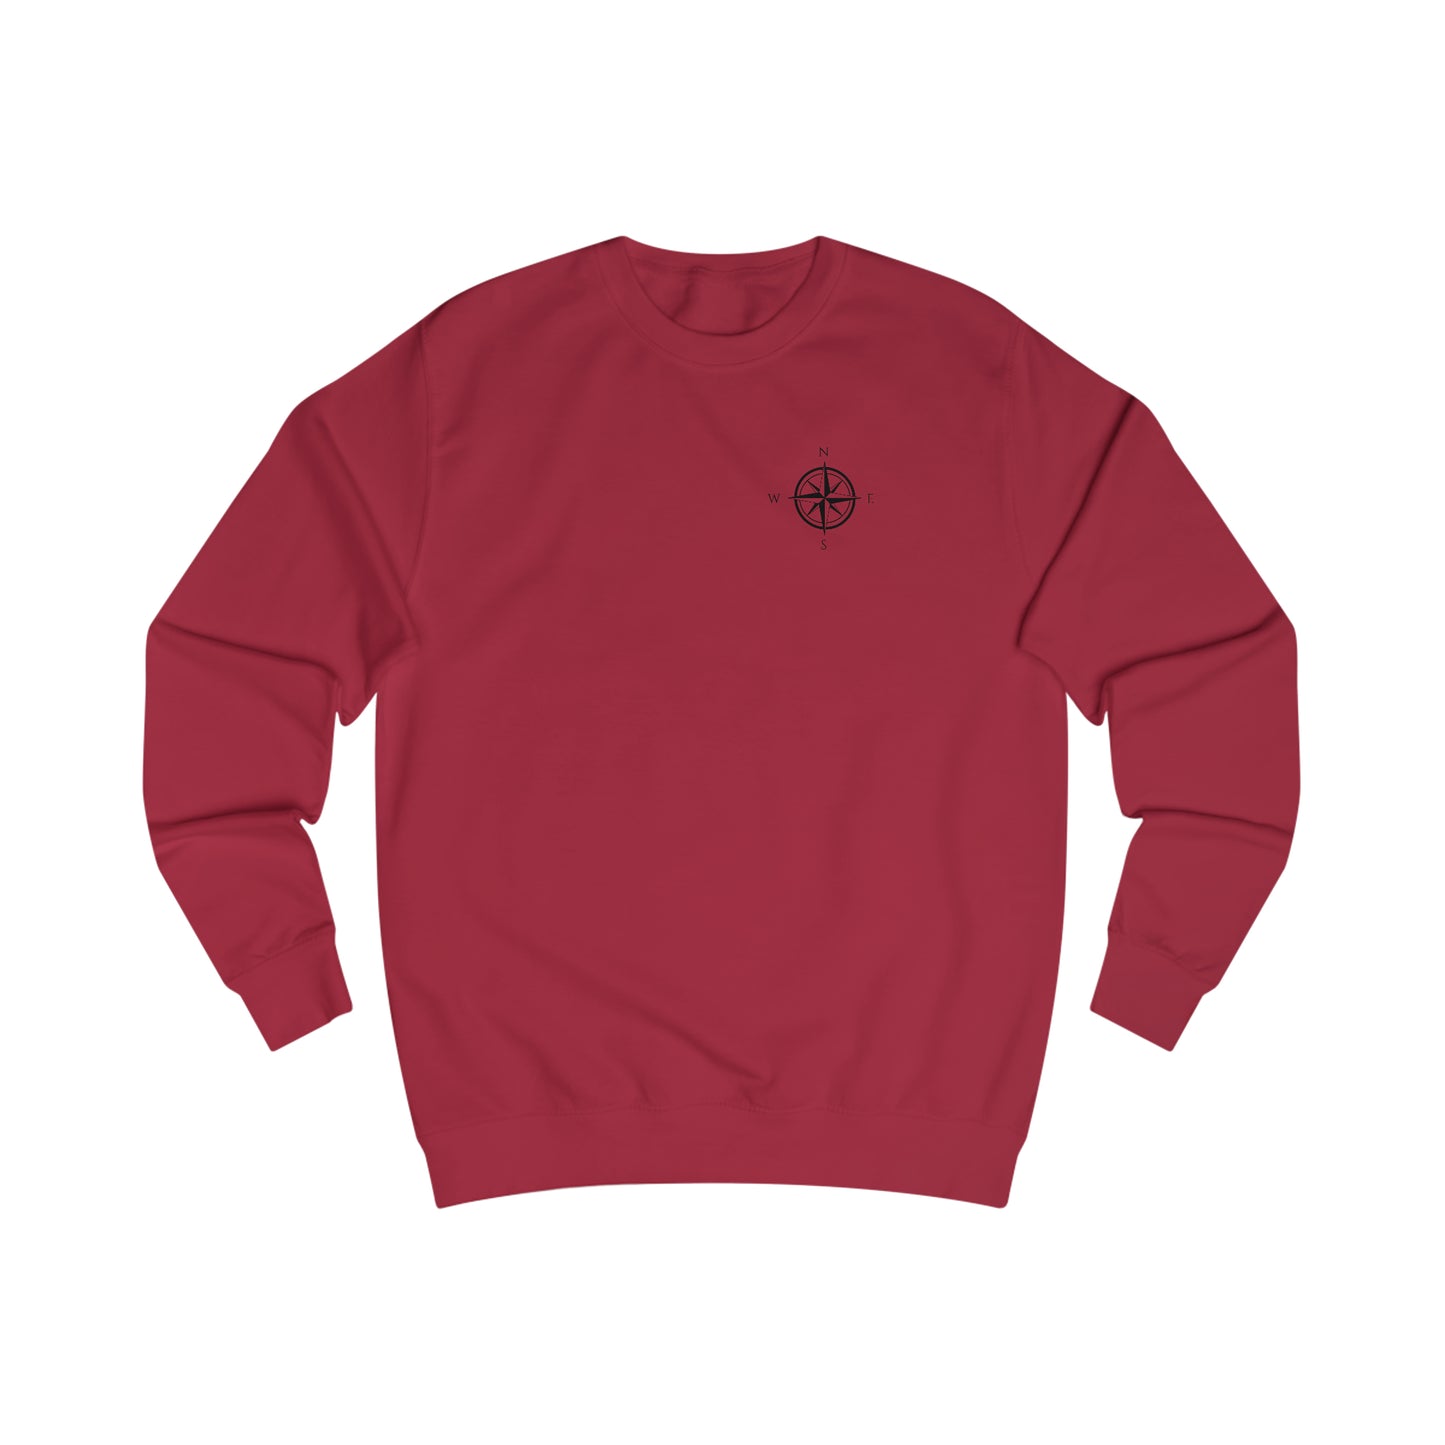 Compass Rose - Okauchee Lake Men's Sweatshirt